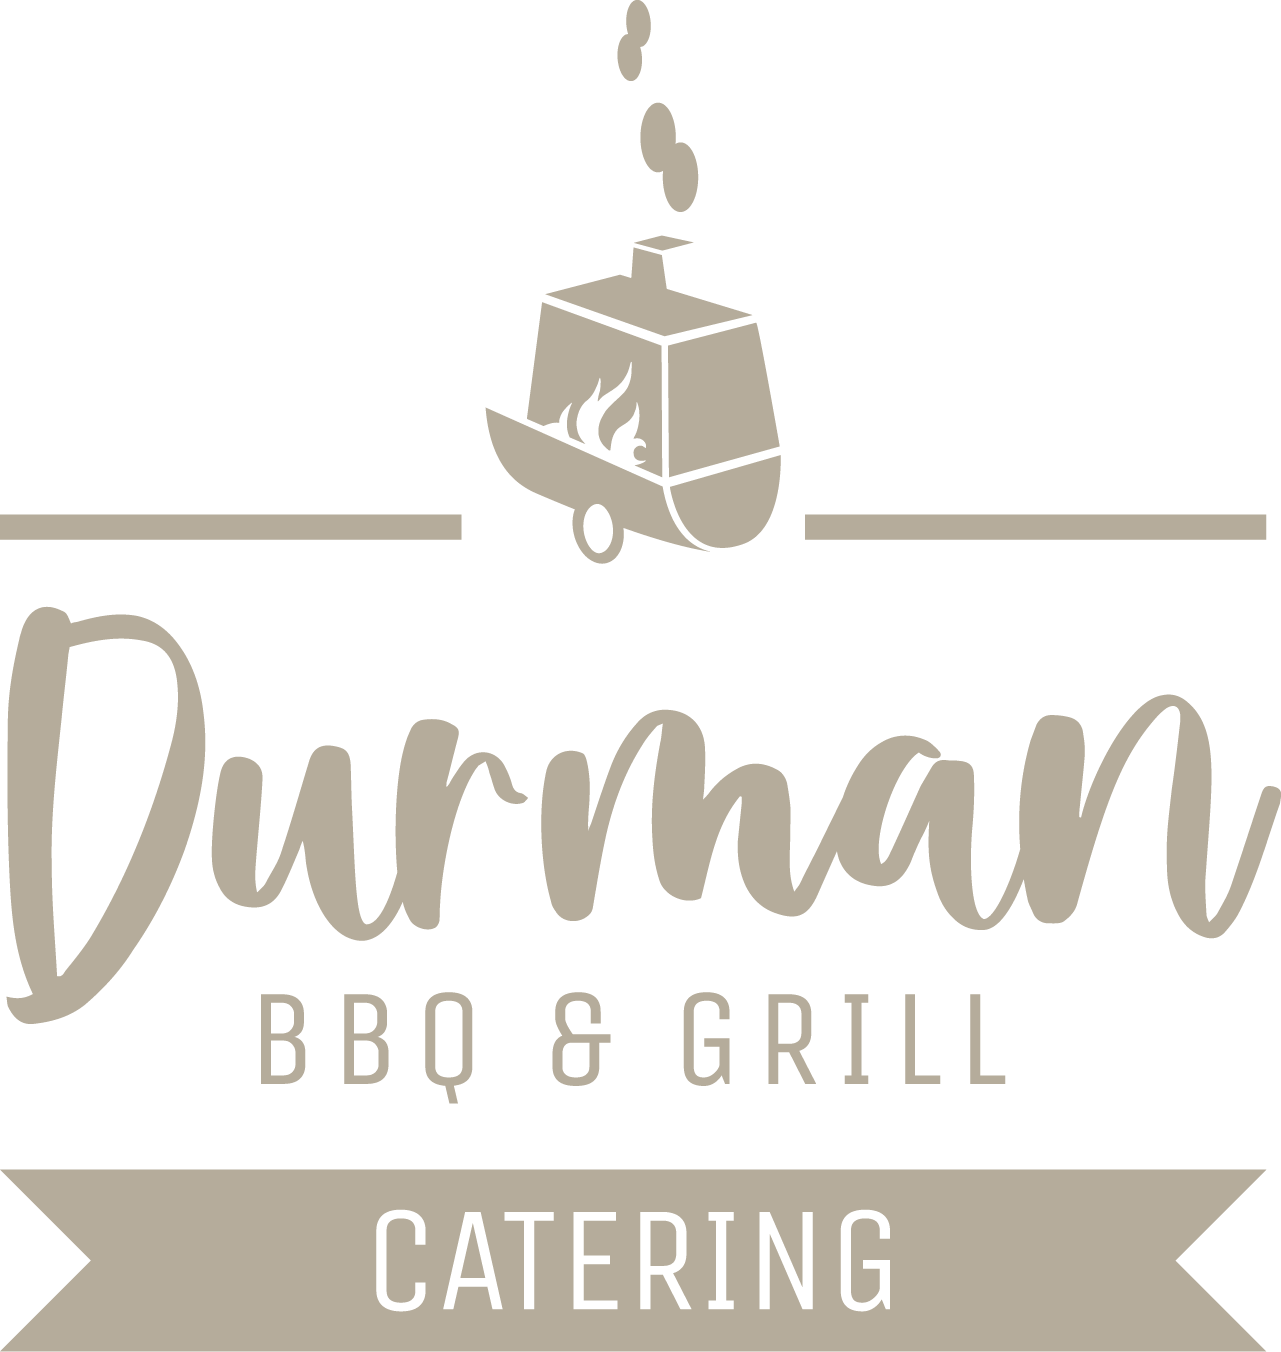 Durman BBQ & Grill